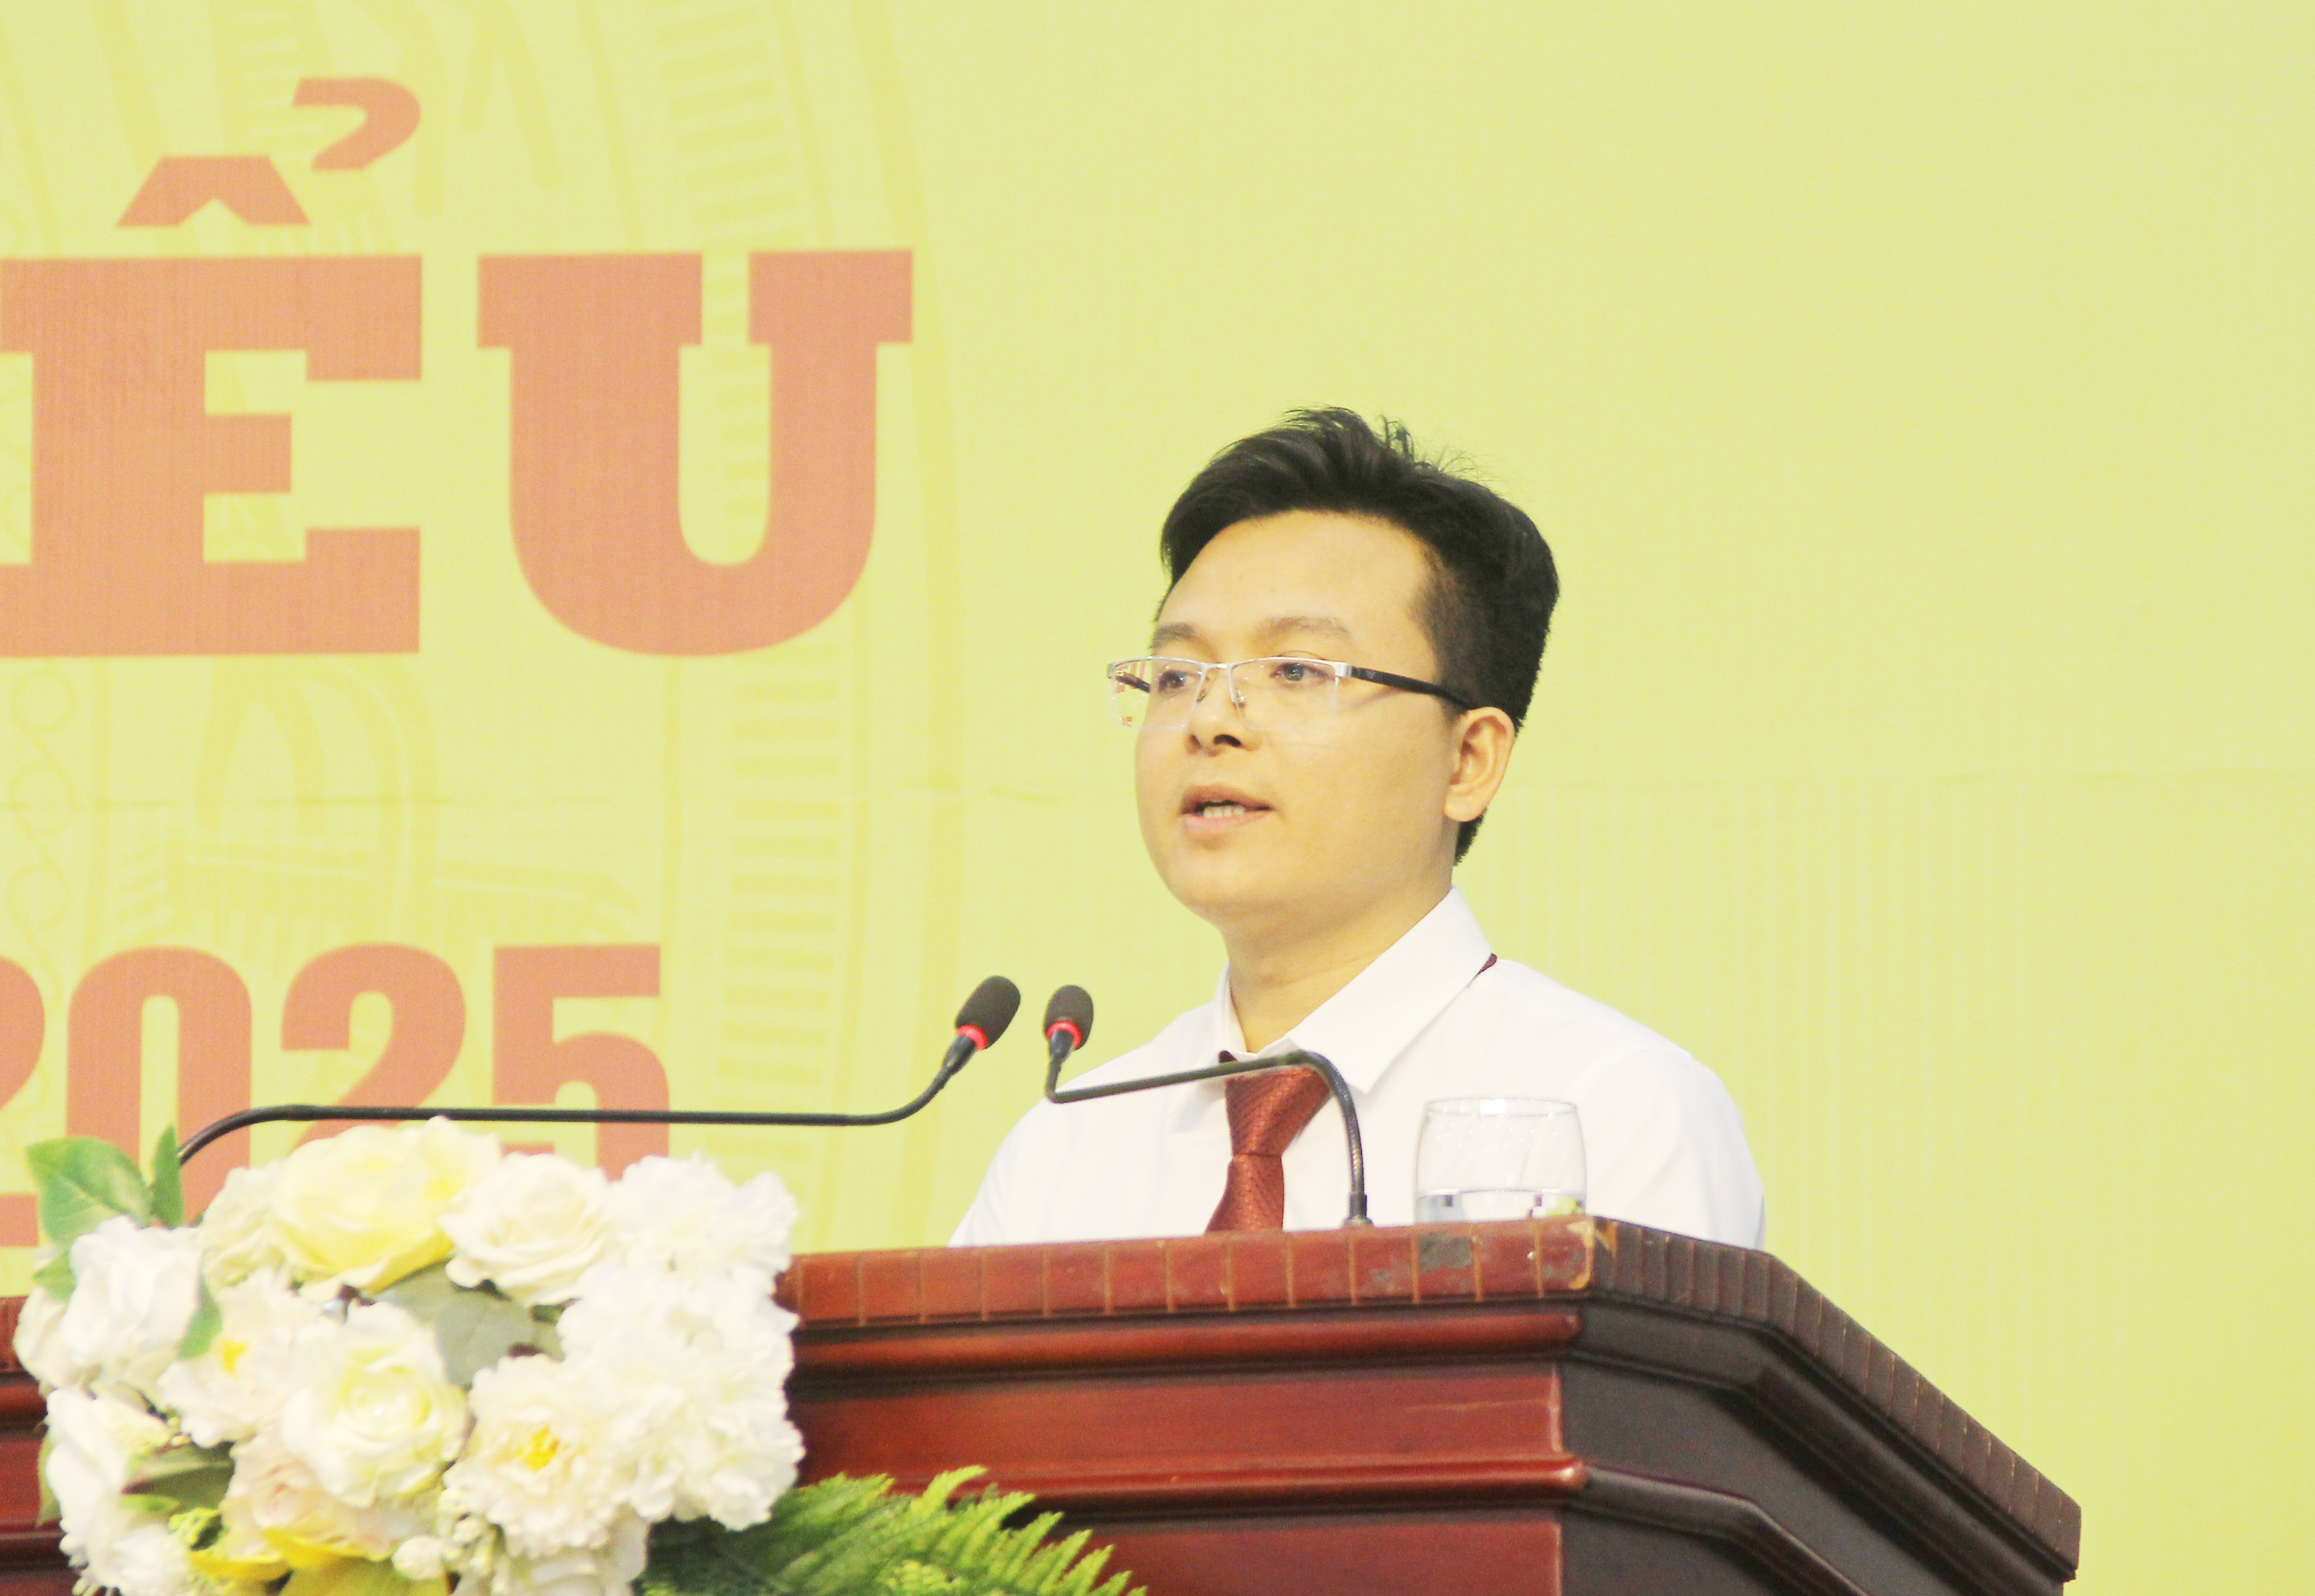 Phó bí thư chi bộ Văn phòng Sở - Nguyễn Minh Thắng khẳng định vai trò, hiệu quả lãnh đạo của Đảng ủy Sở trong công tác cải cách hành chính nhiệm kỳ qua. Ảnh: Mai Hoa